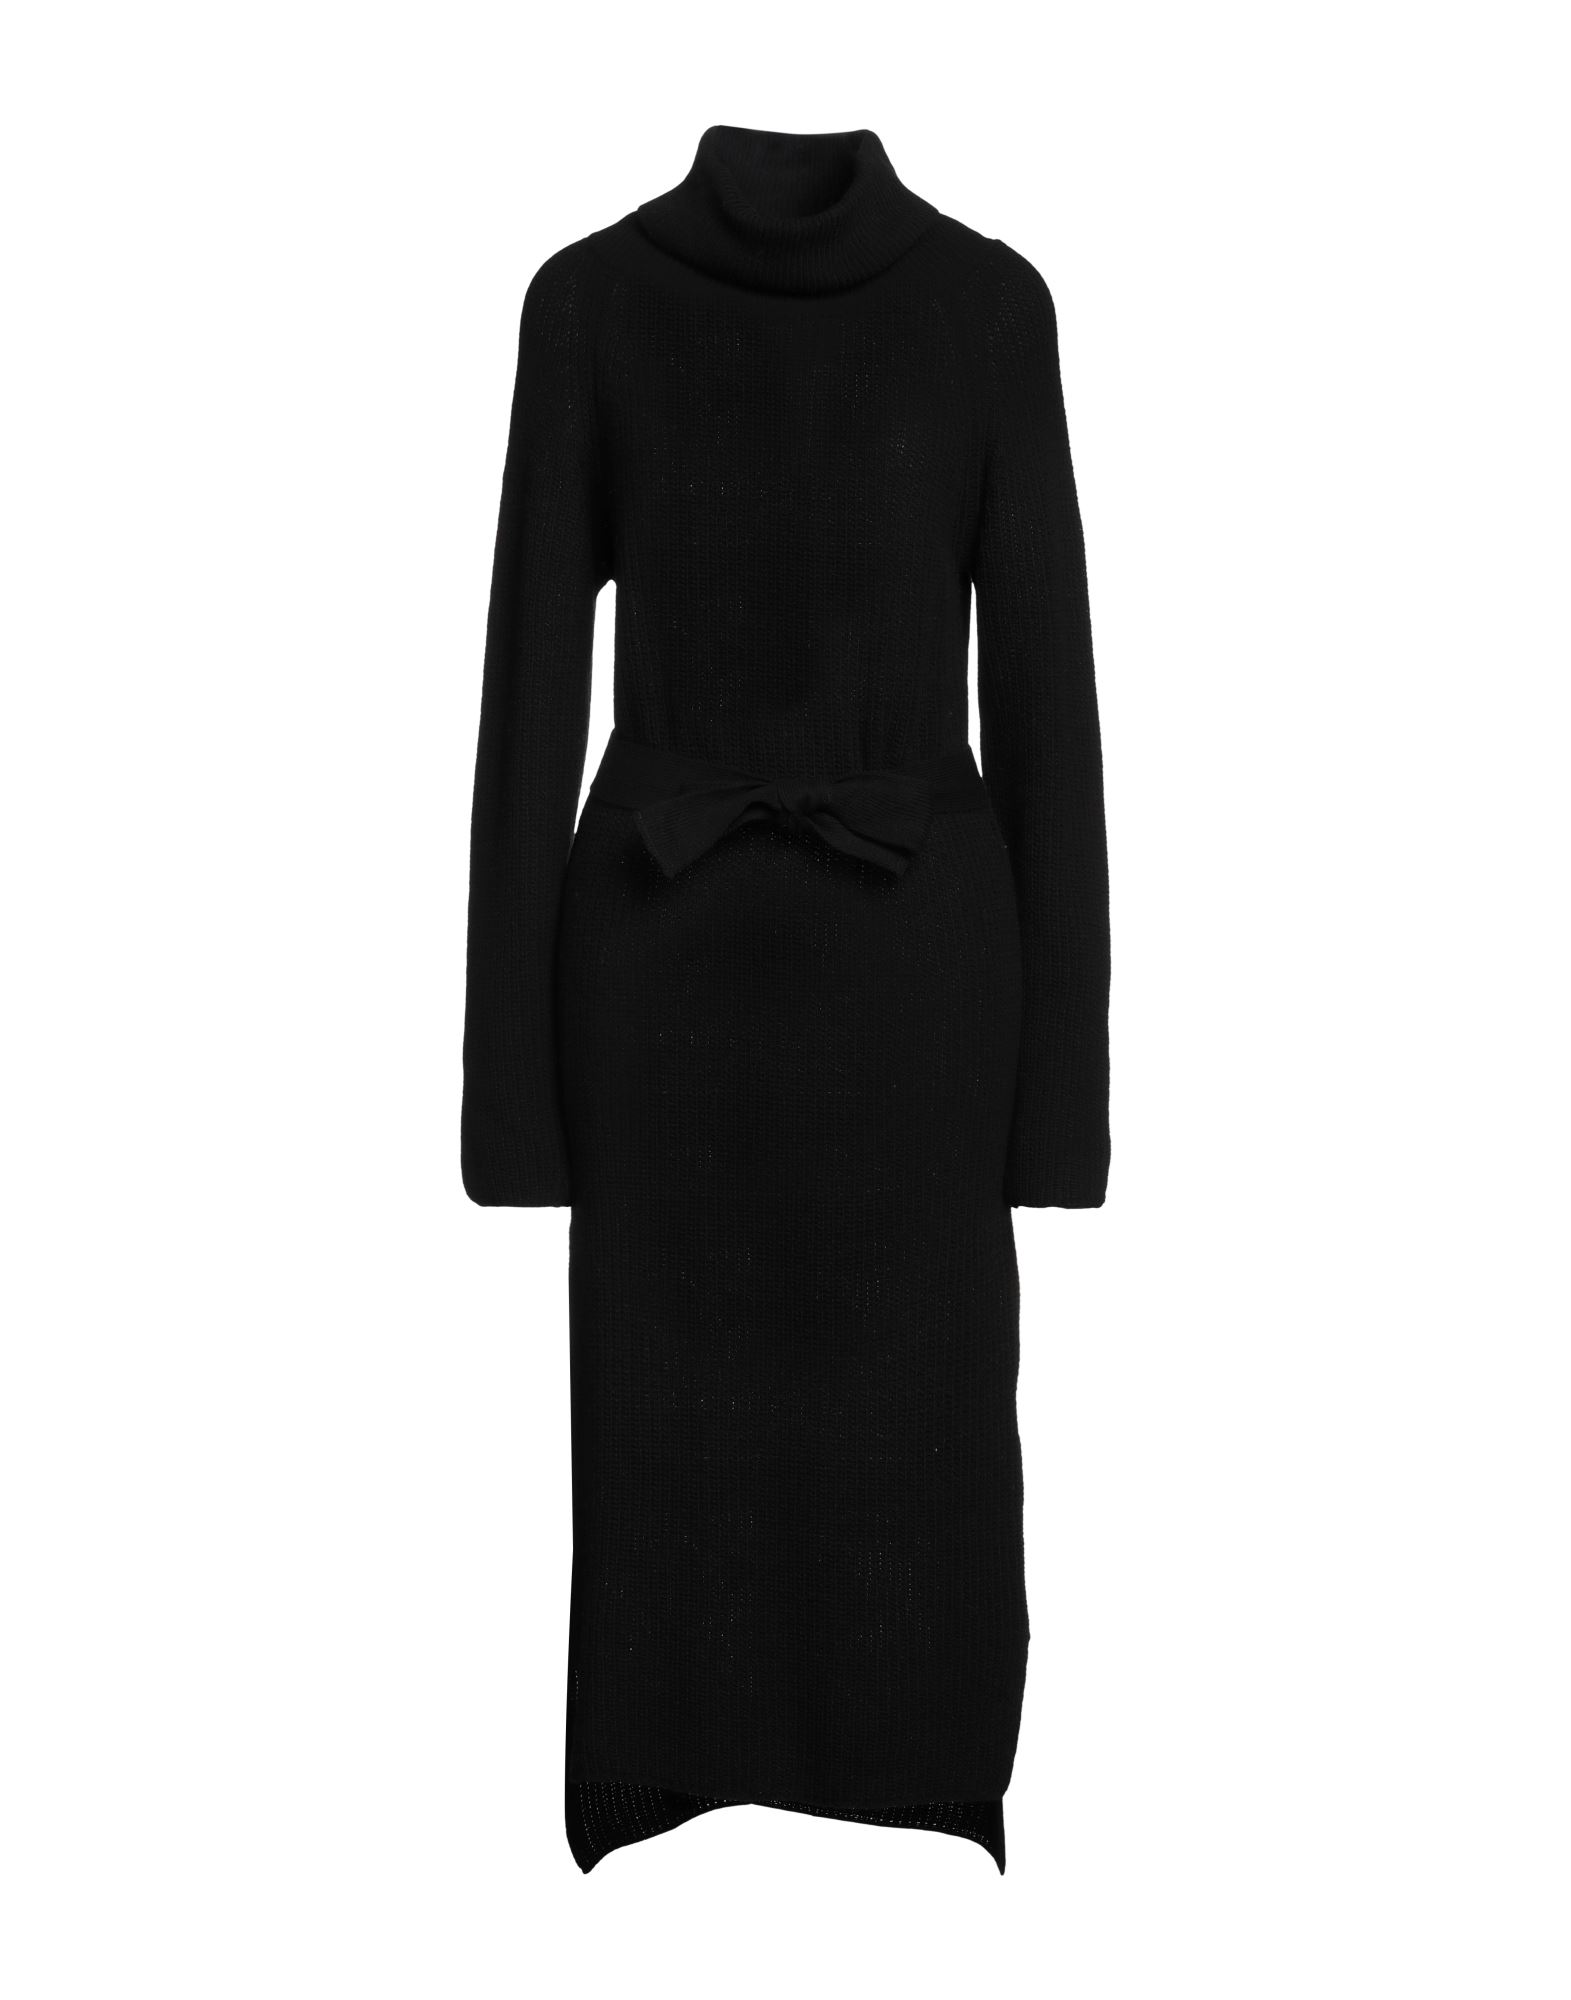 N.o.w. Andrea Rosati Cashmere Midi Dresses In Black